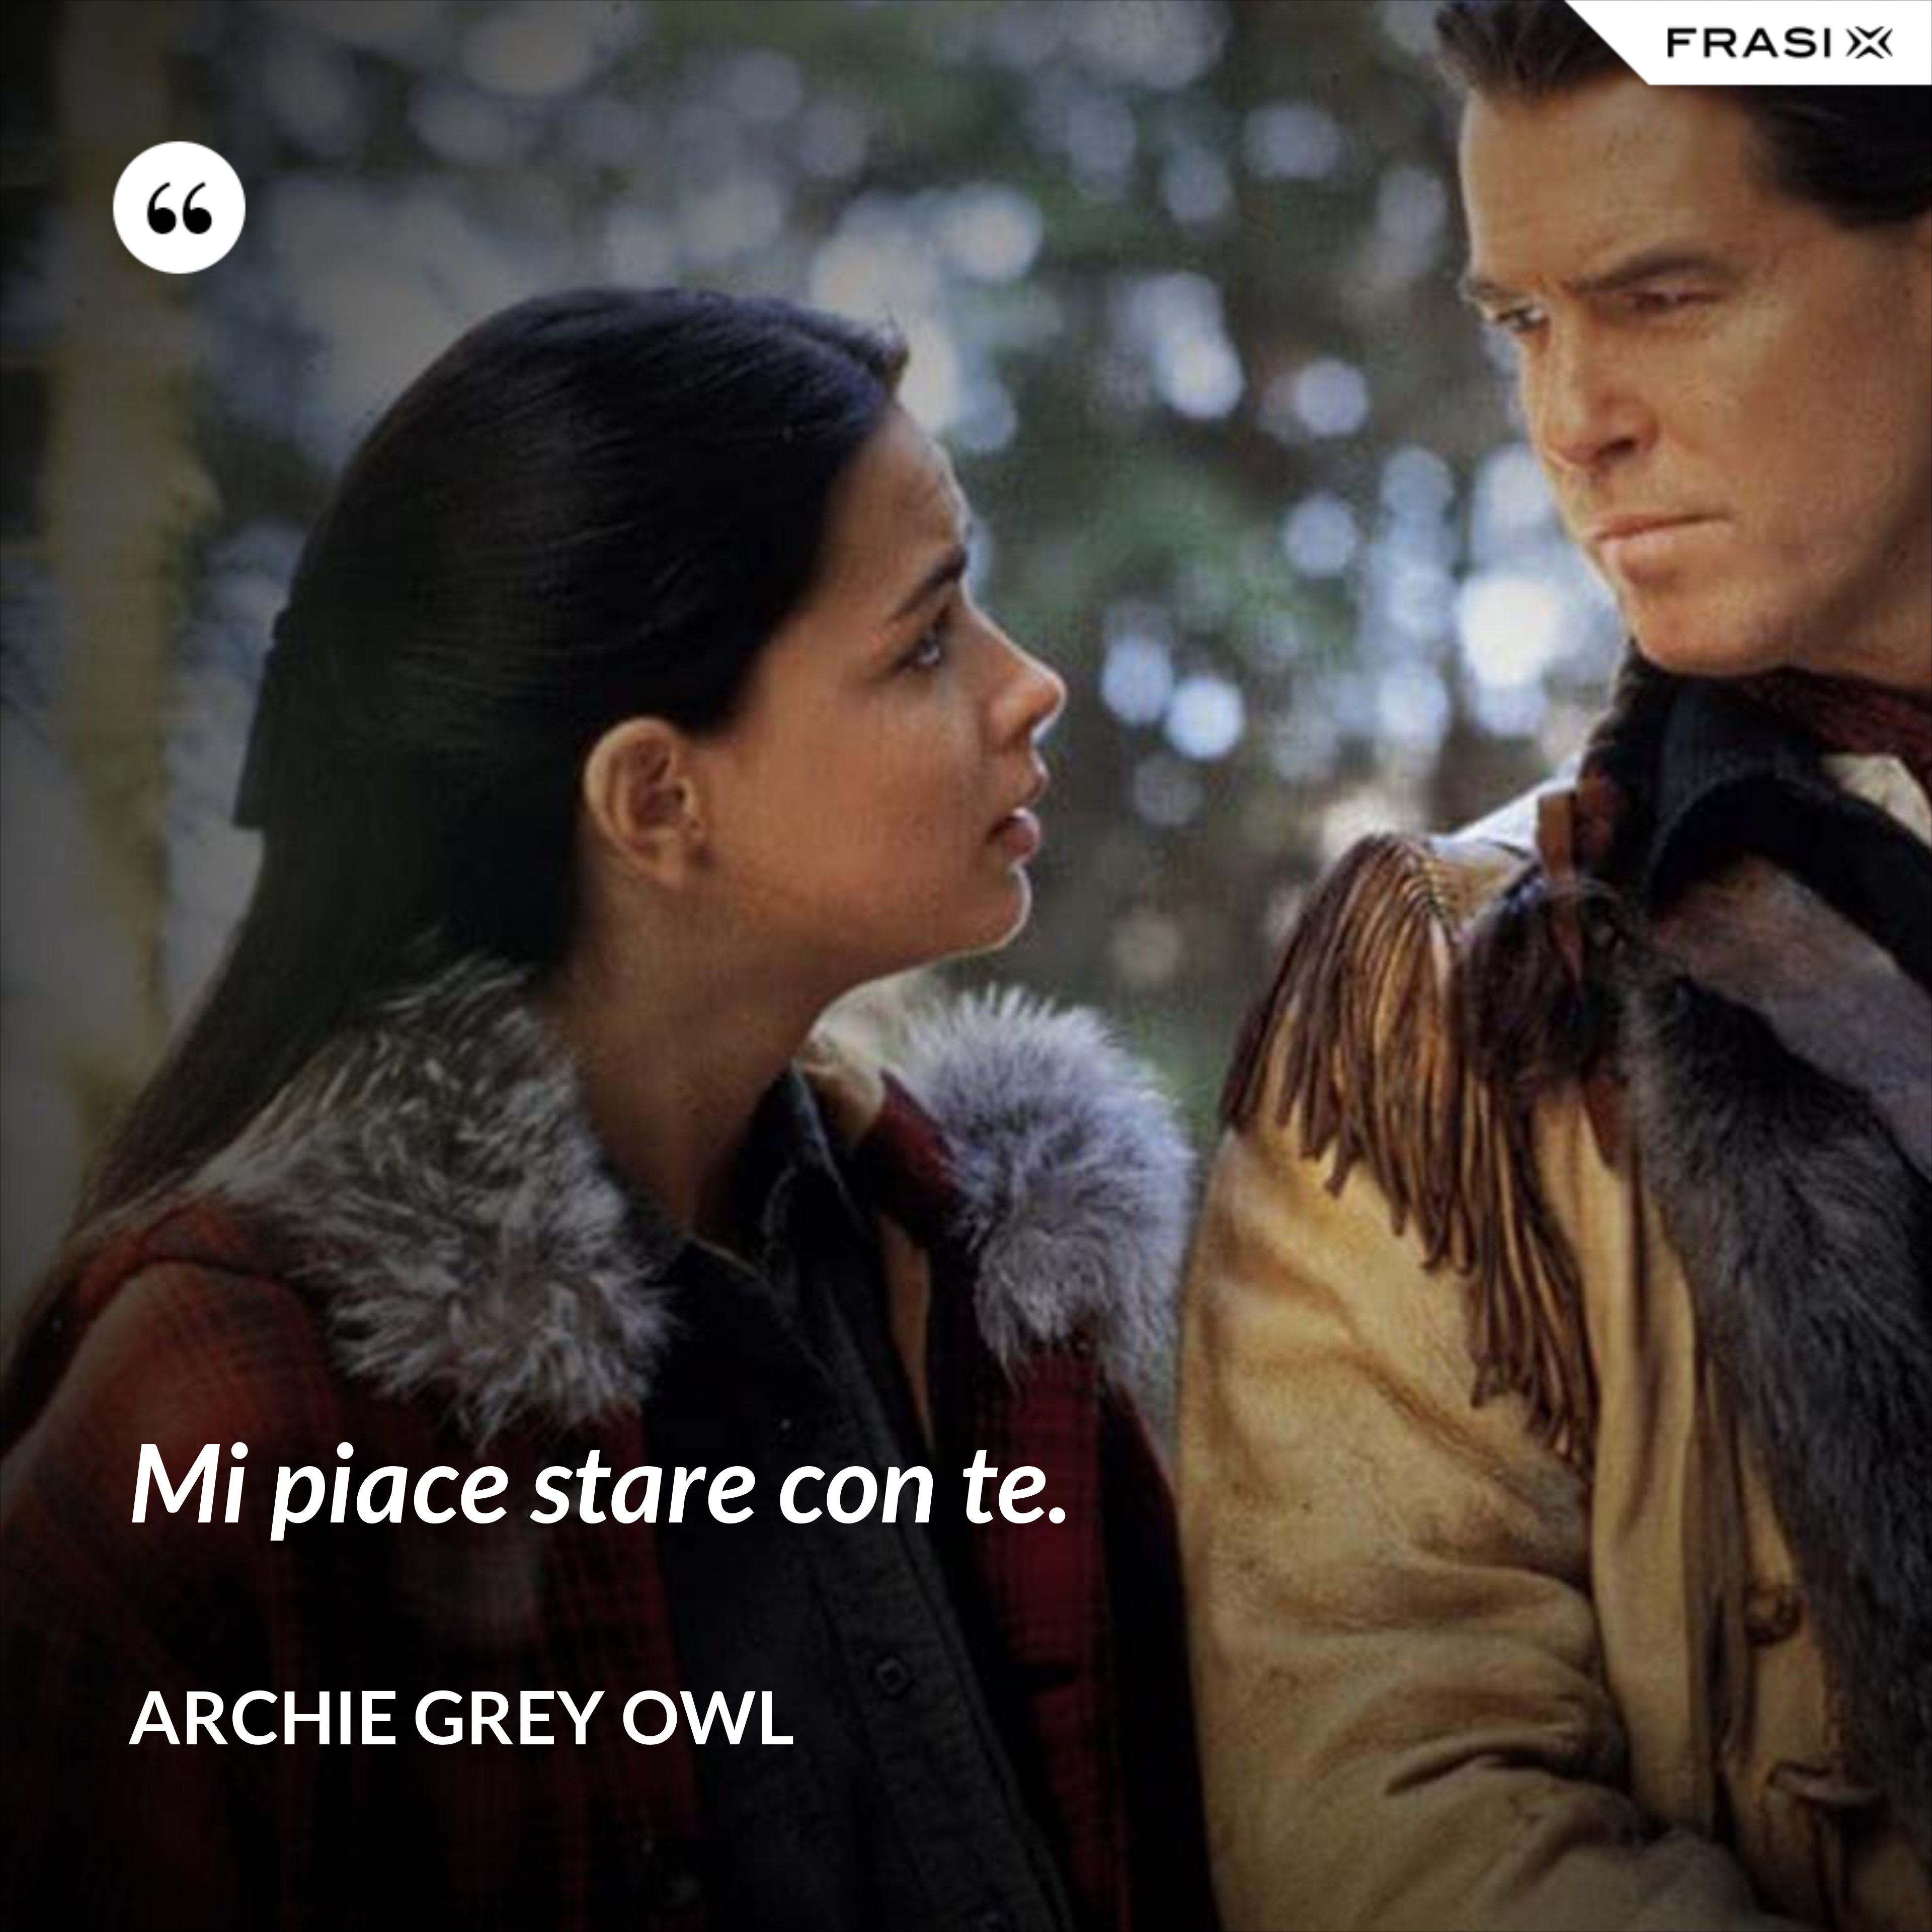 Mi piace stare con te. - Archie Grey Owl